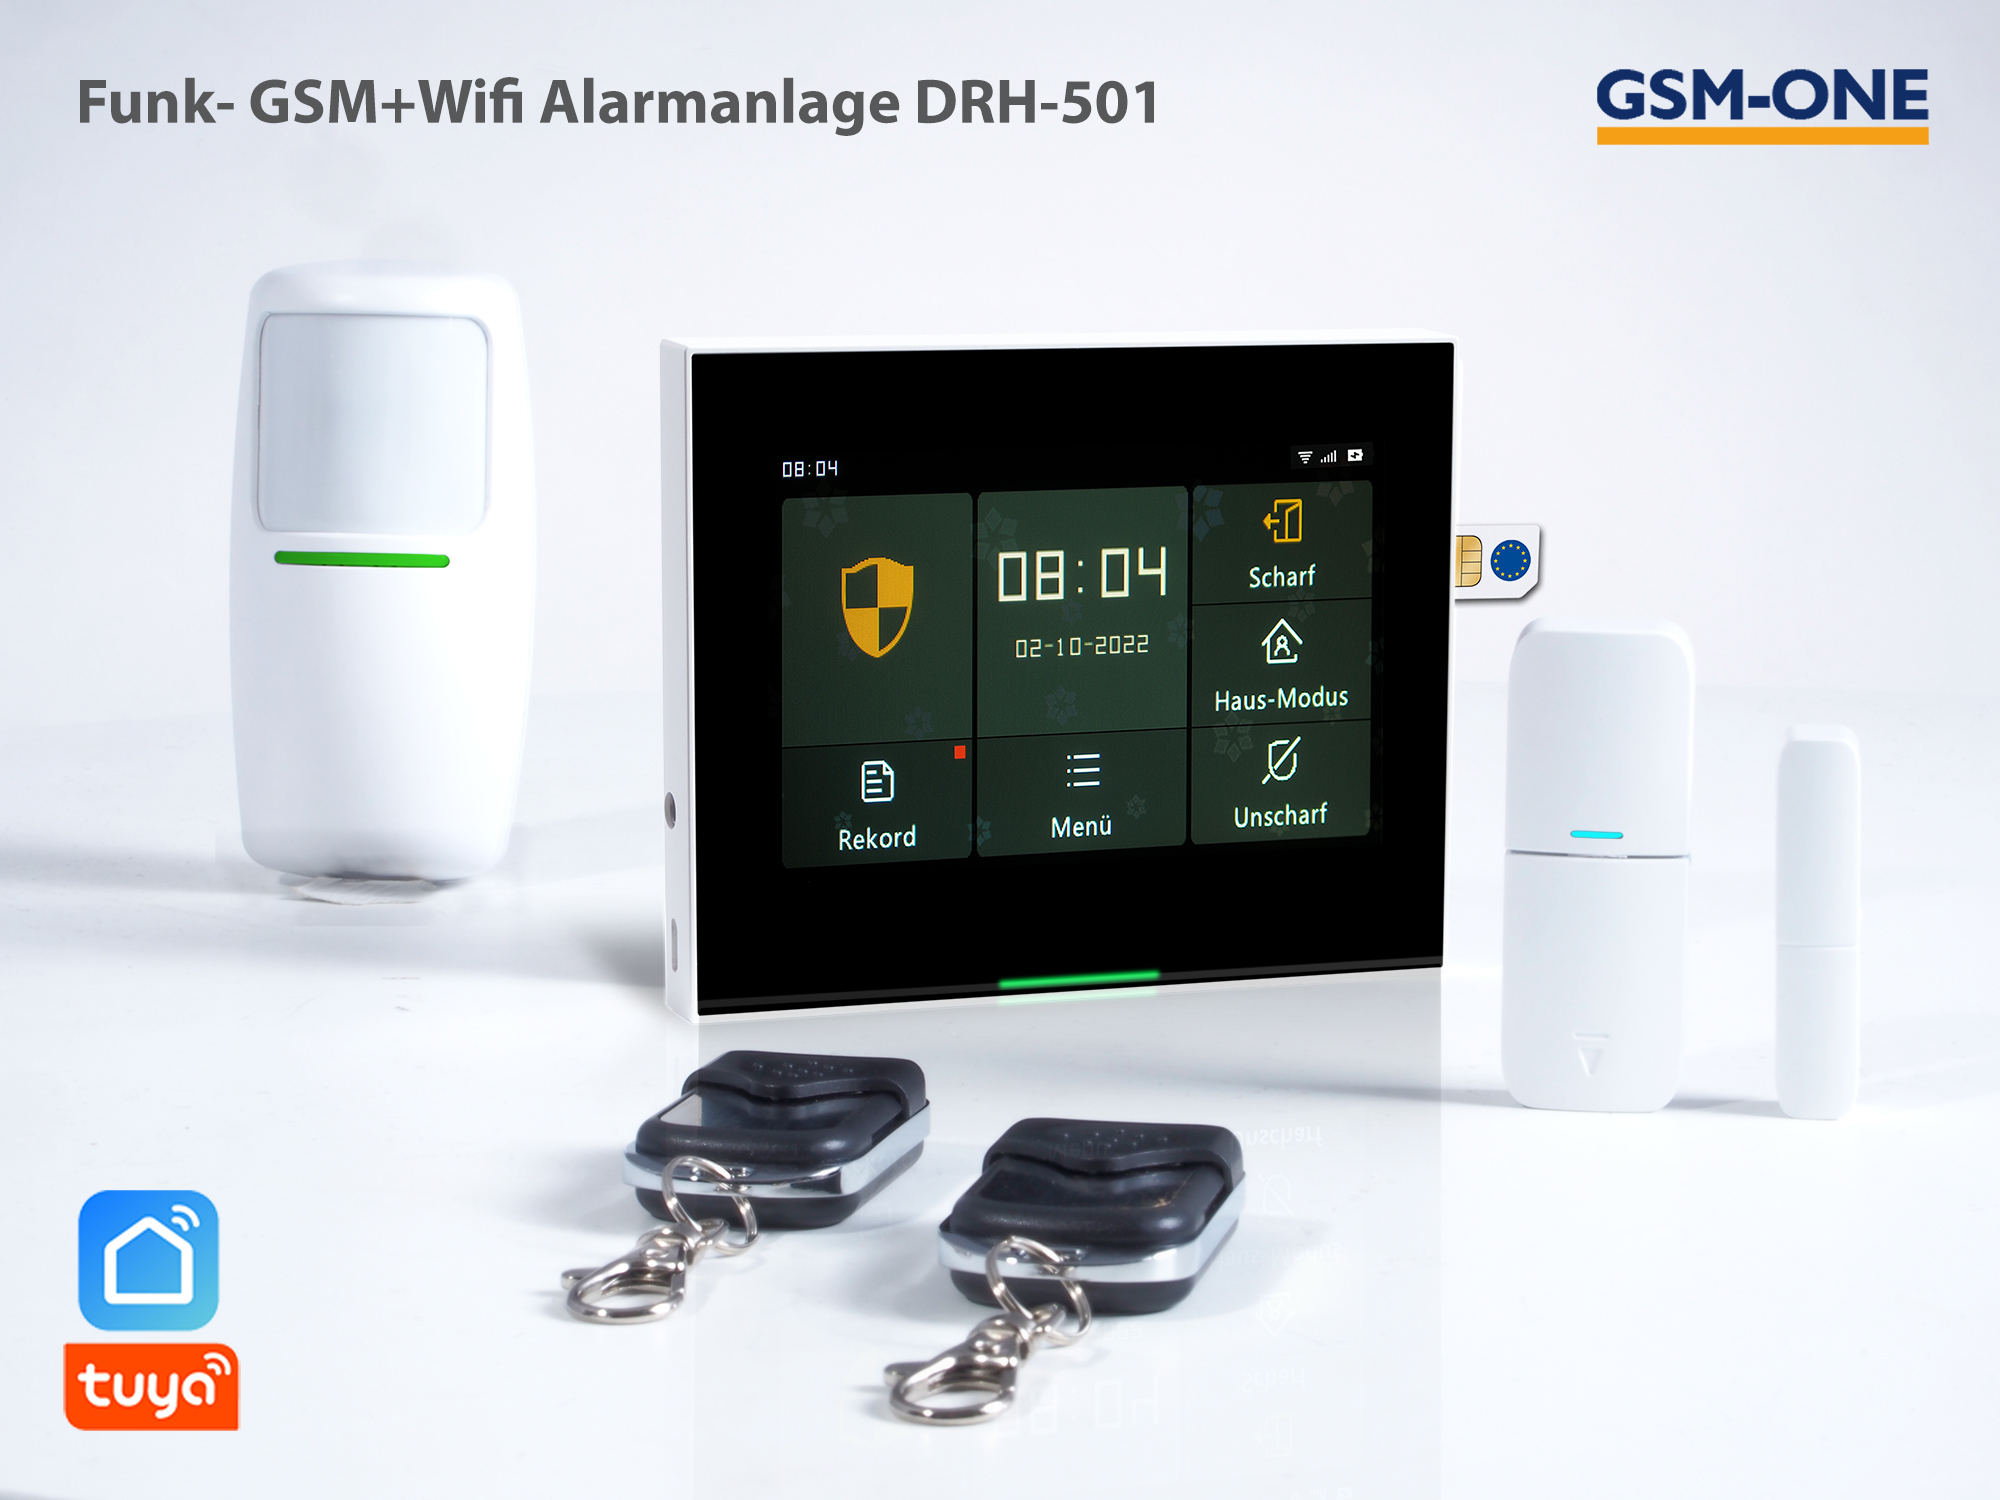 DRH-501 Alarmanlage. GSM+WiFi Alarmierung und Steuerung